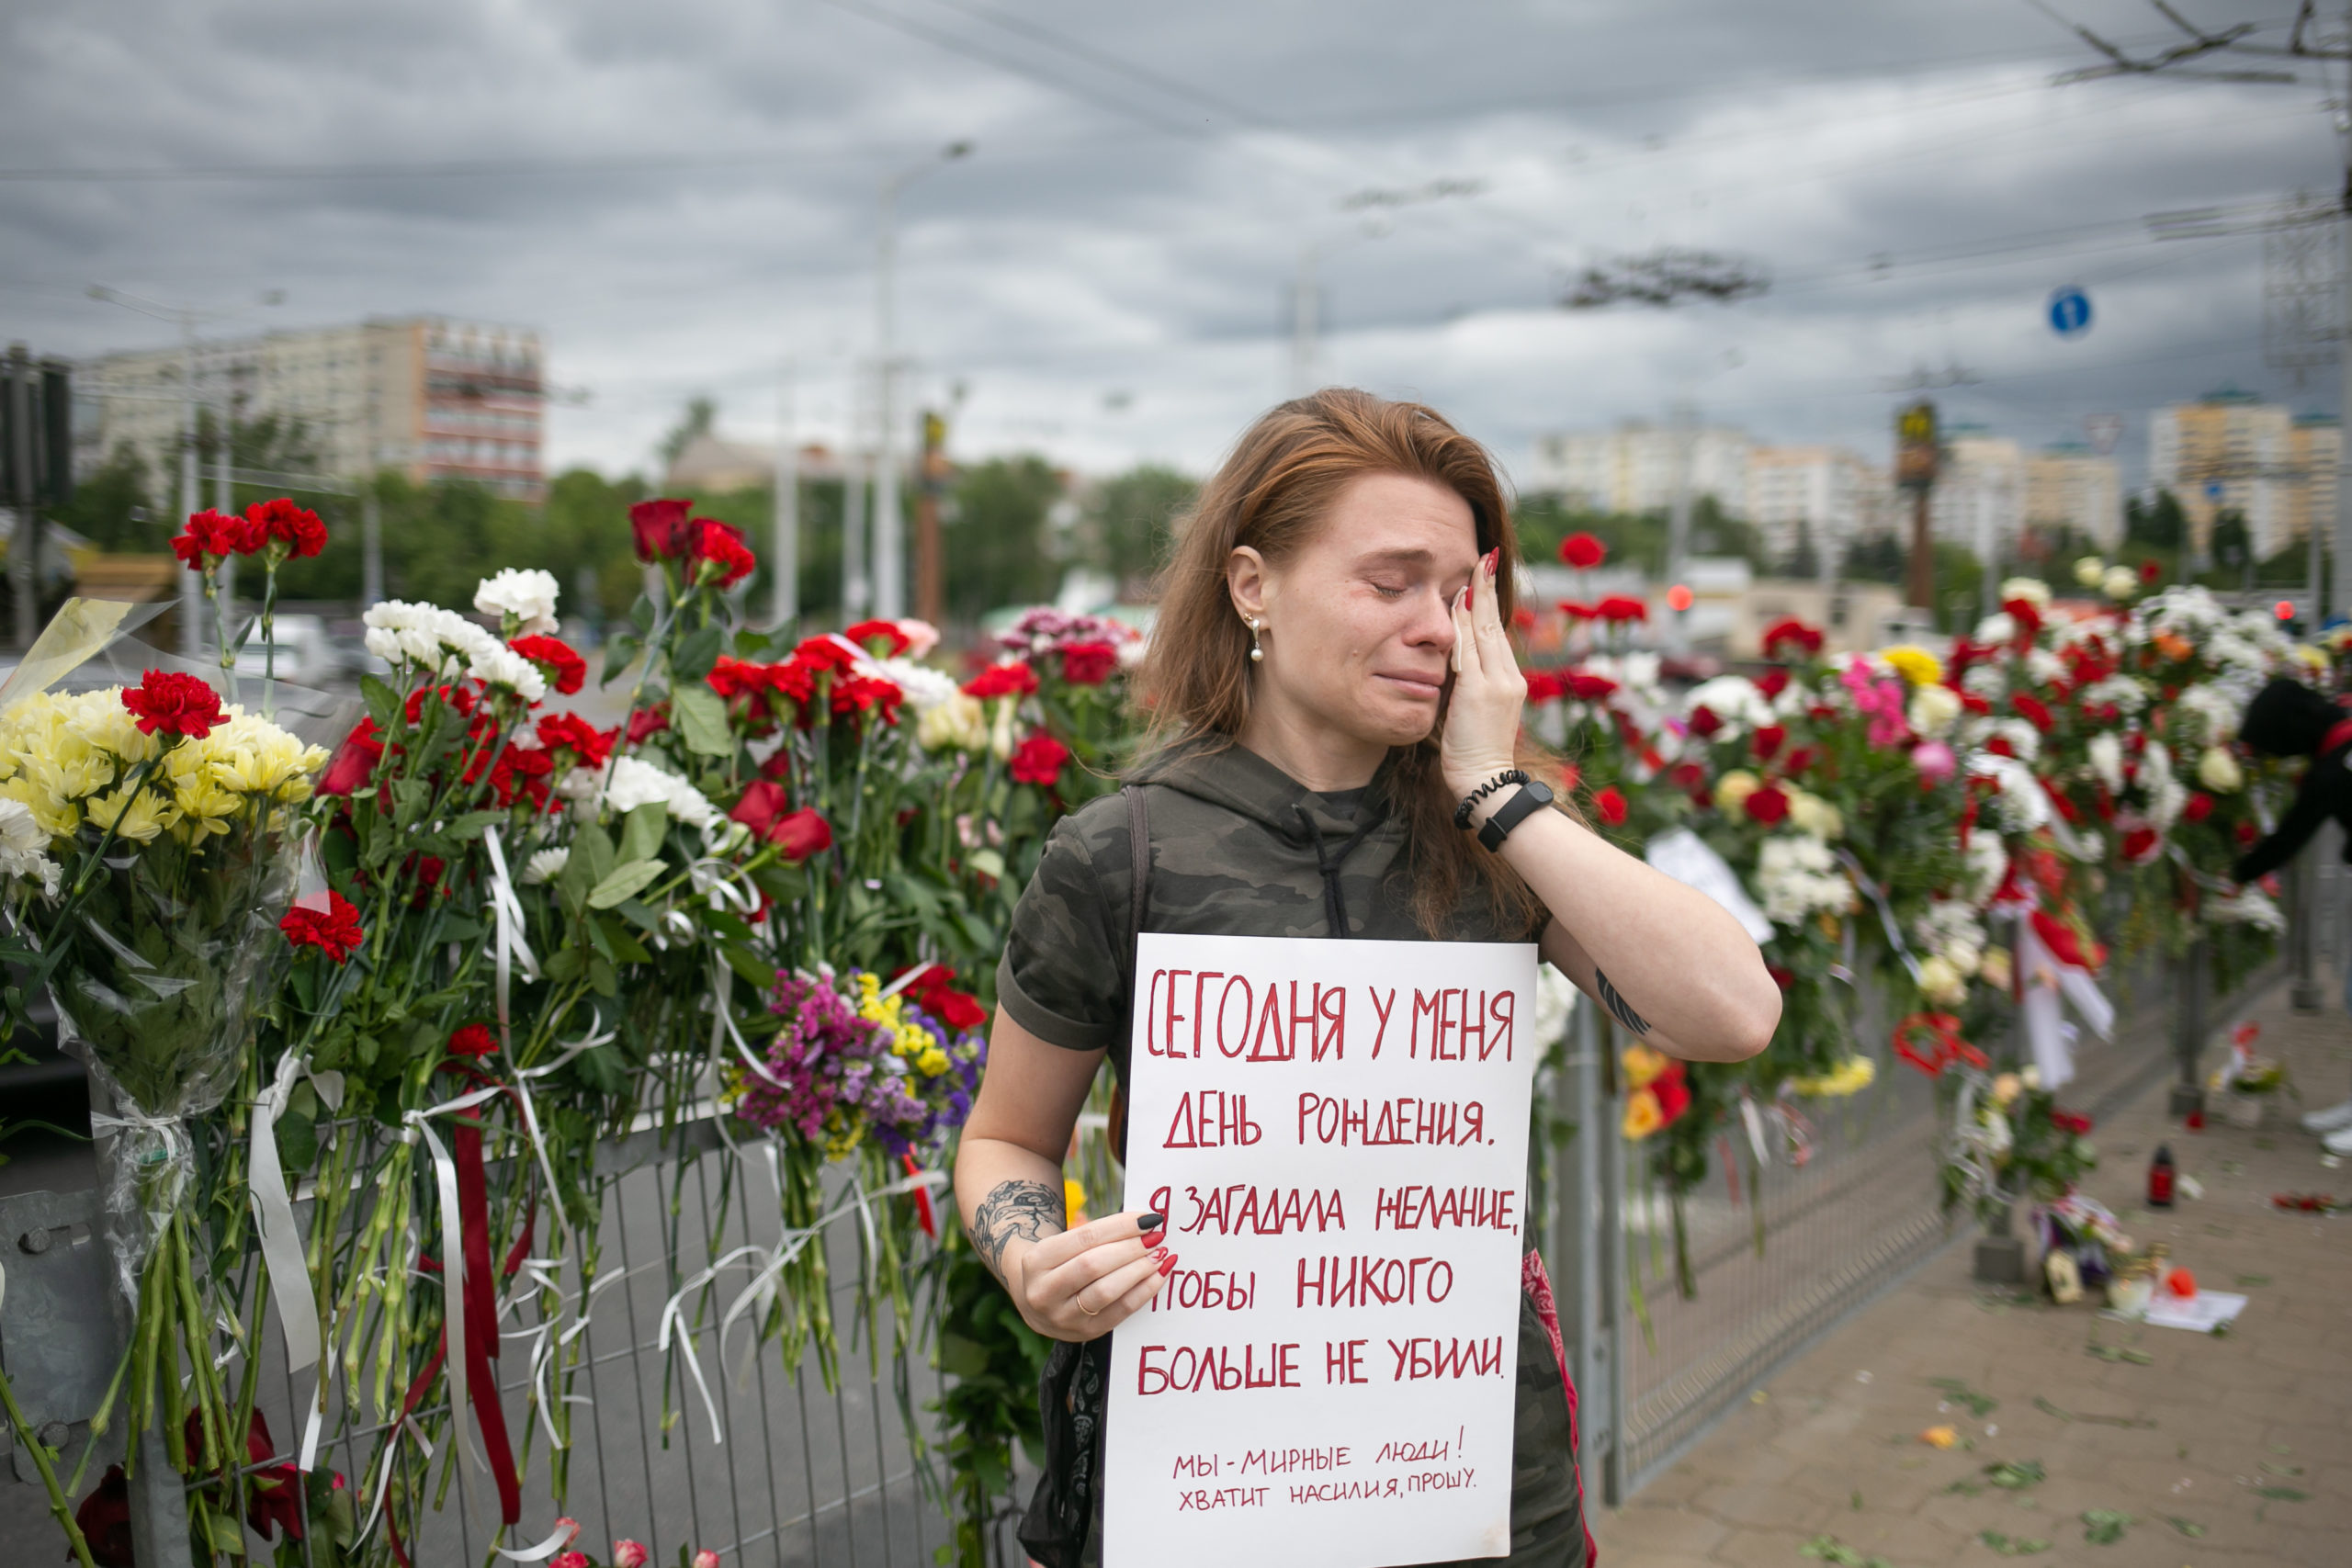 Une jeune femme pleure près du mémorial populaire en l'honneur d'Aleksandr Taraikovsky, un manifestant assassiné par la police. Son affiche dit : " Aujourd'hui, c'est mon anniversaire. Je souhaite qu'ils ne tuent personne d'autre. Nous sommes des gens pacifiques ! Plus de violence, je vous en supplie". Minsk, août 2020.